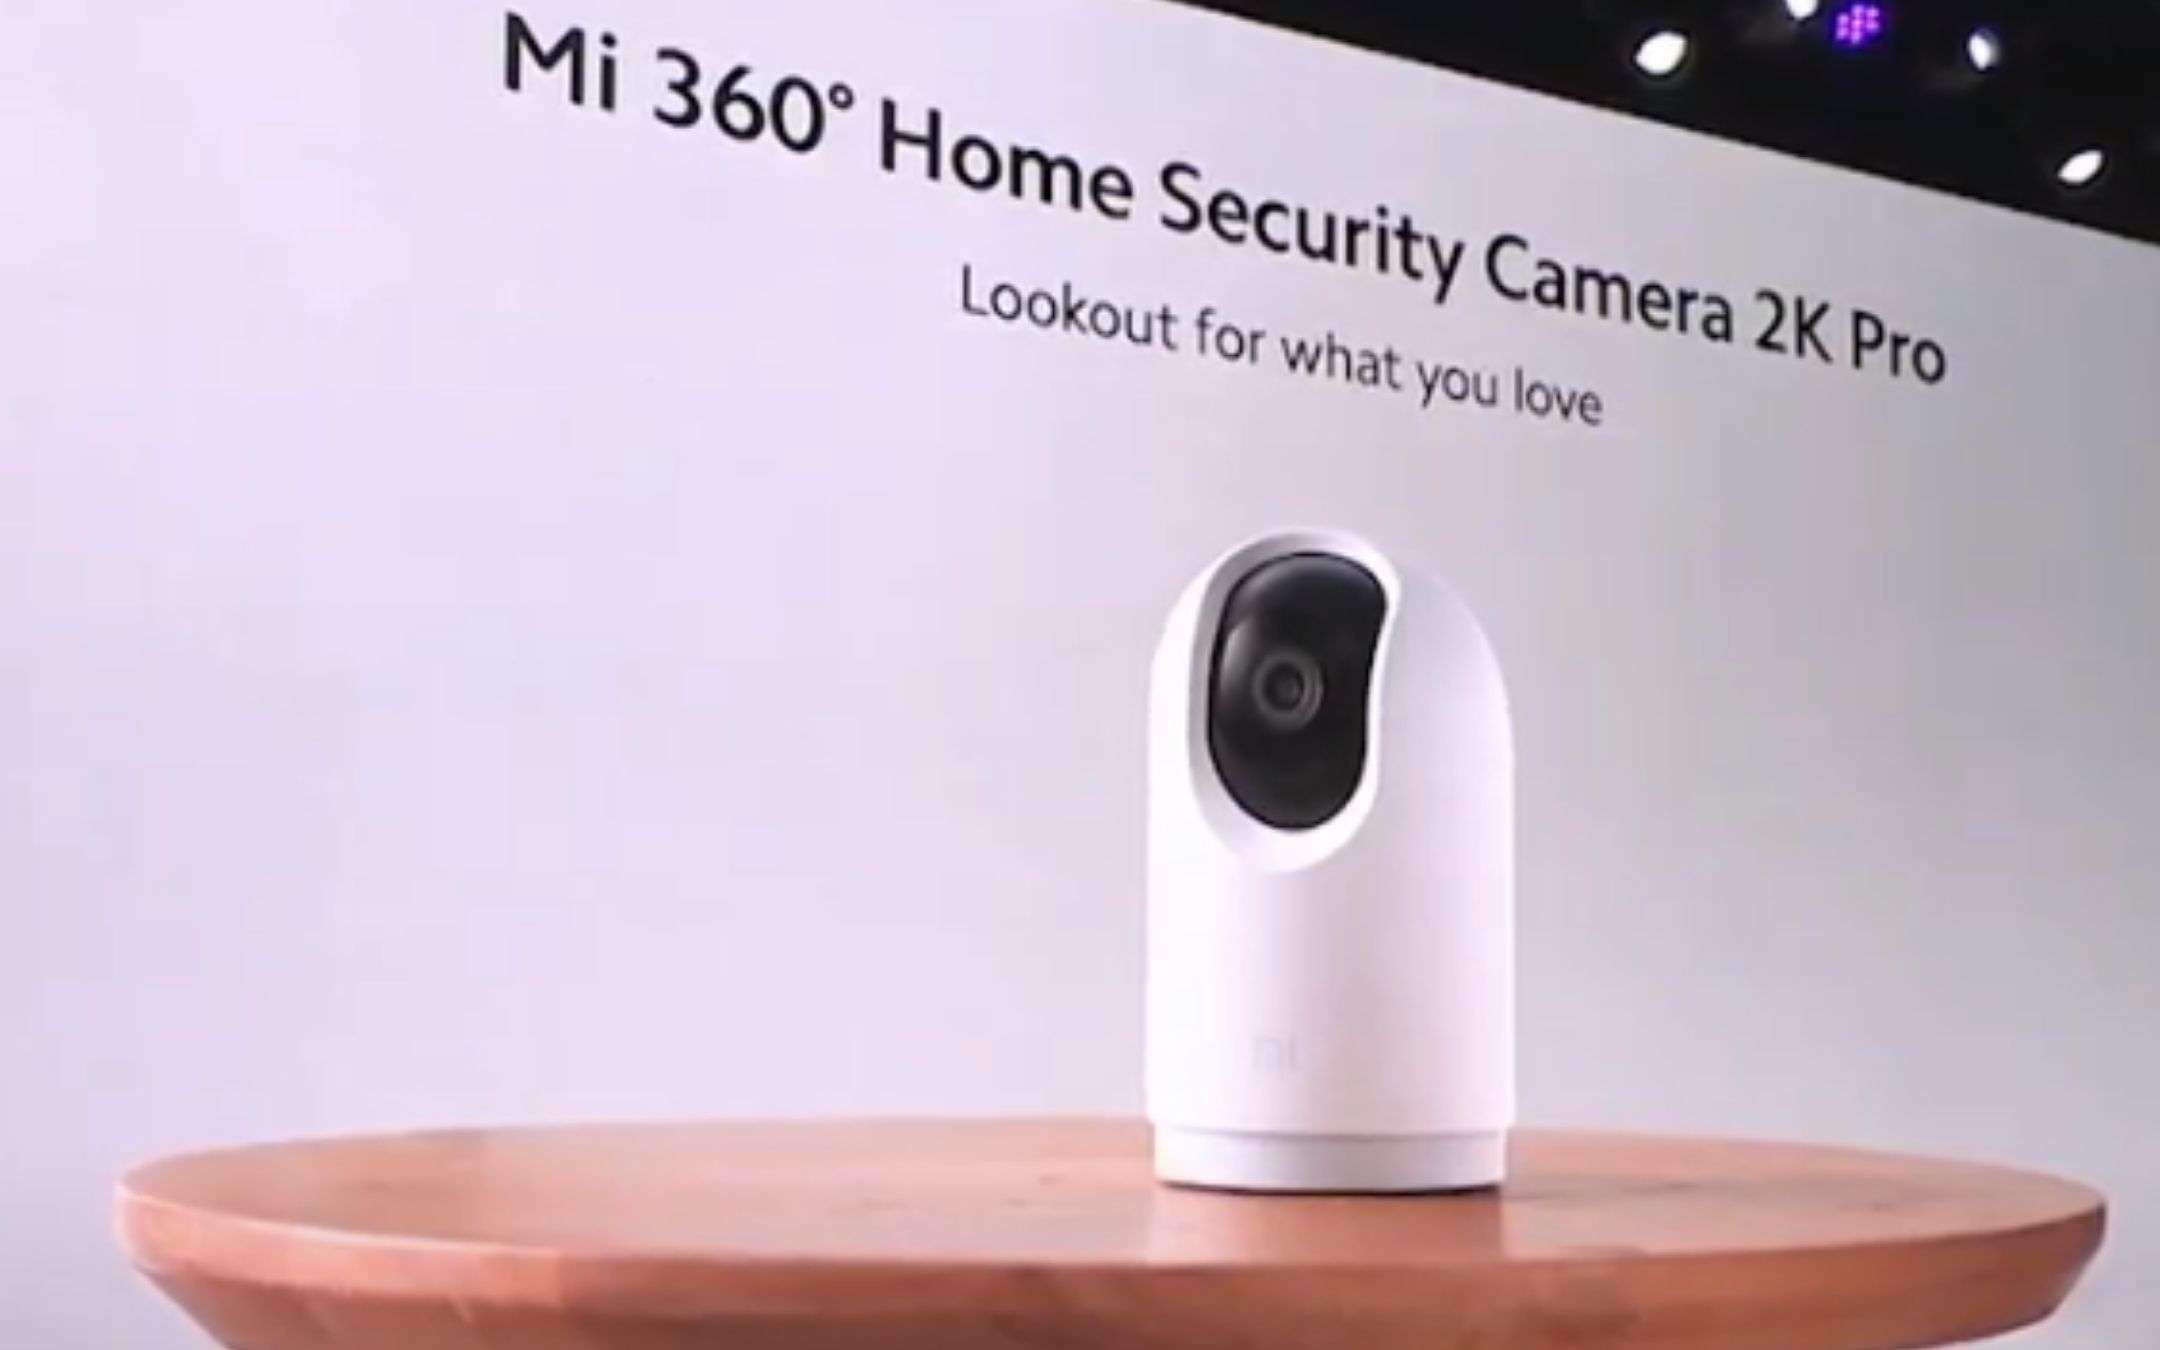 Xiaomi Mi 360° Home Security Camera 2K Pro ufficiale